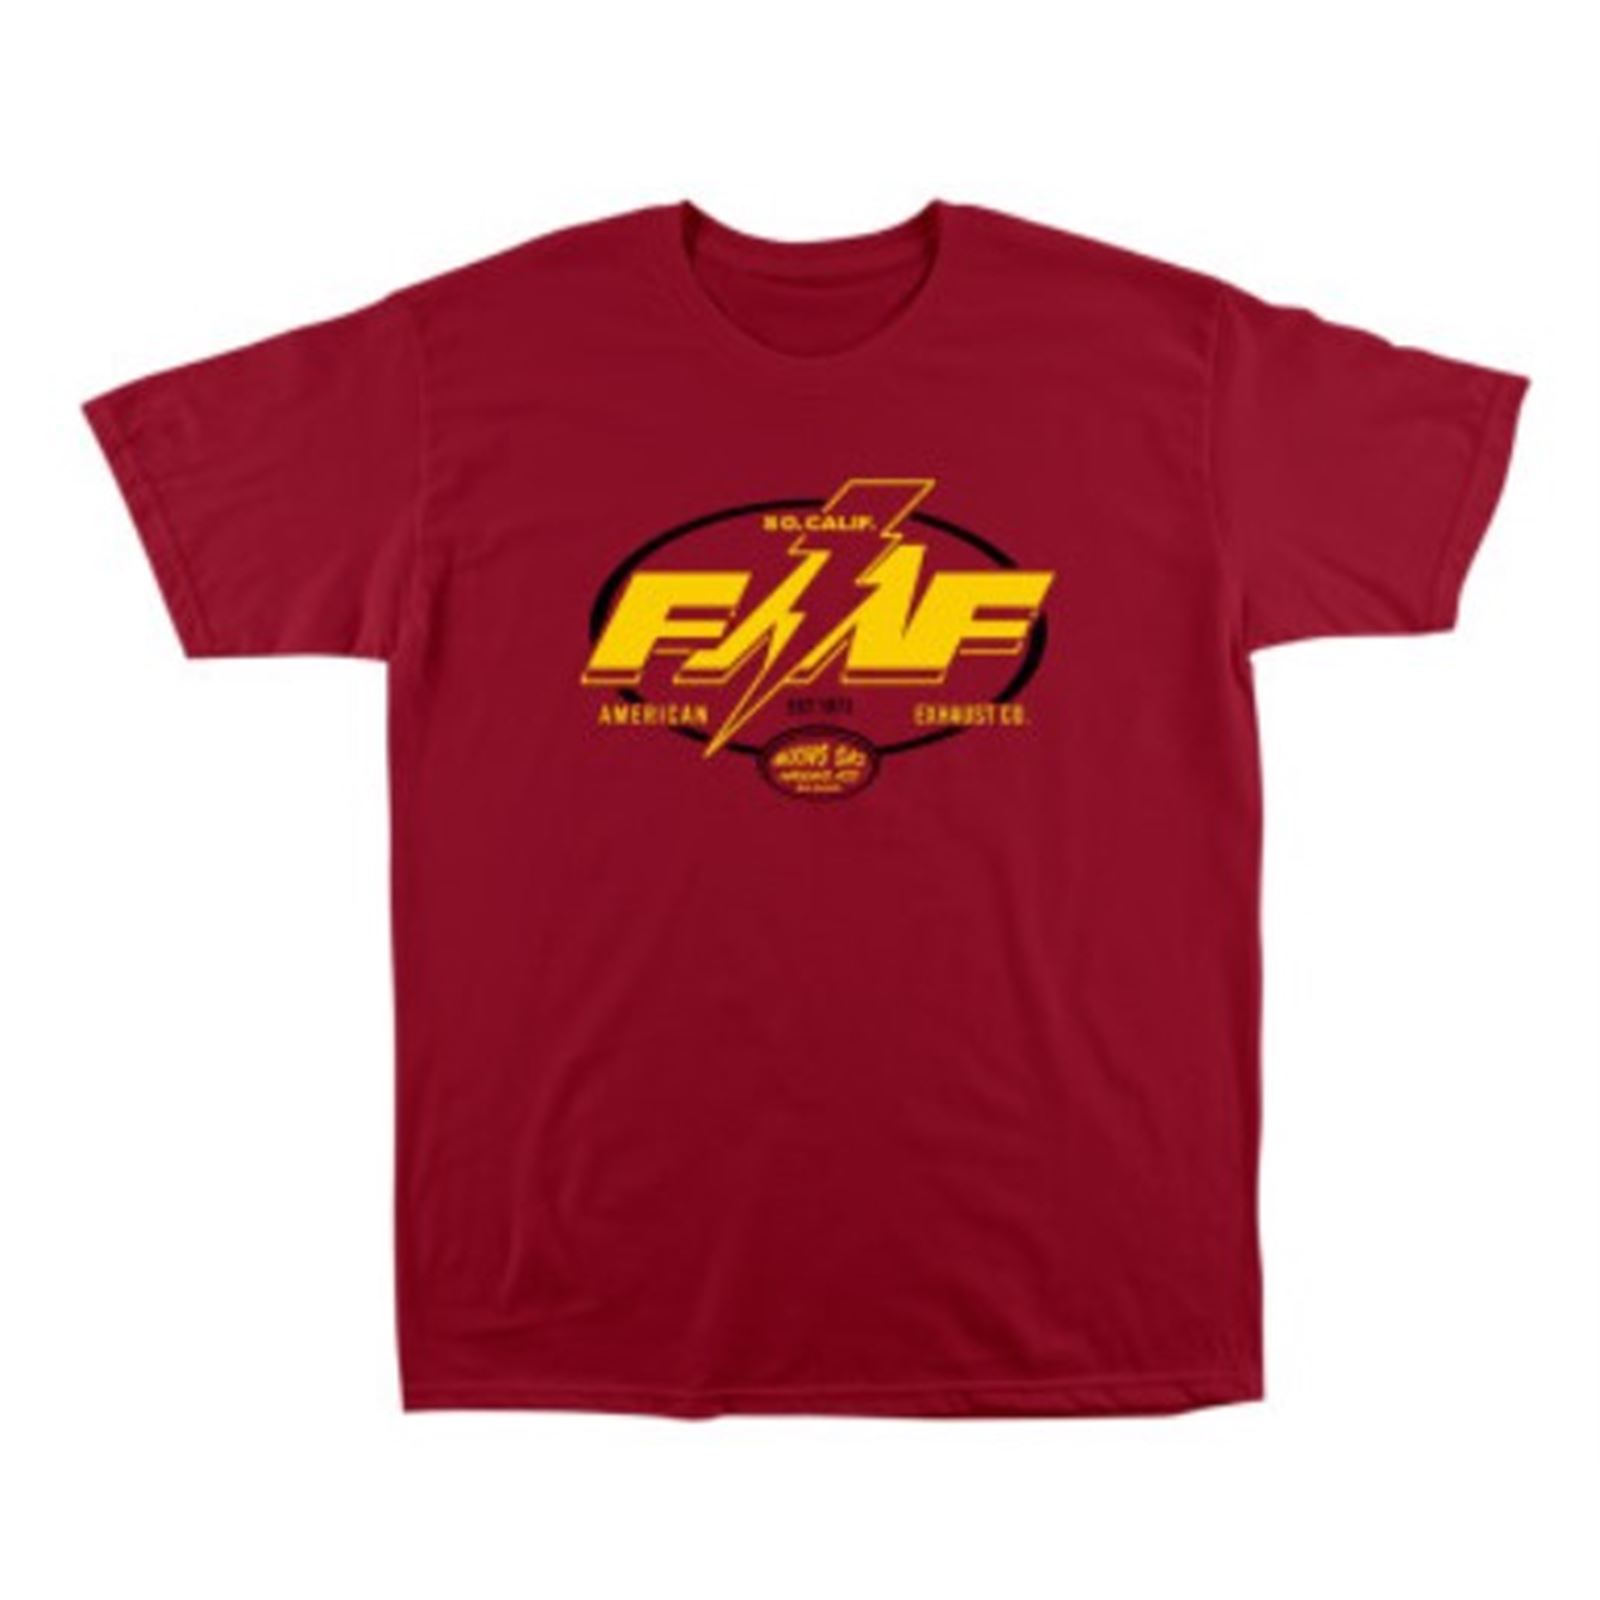 FMF Racing Broadcast Tee Shirt - Cardinal Red - Medium